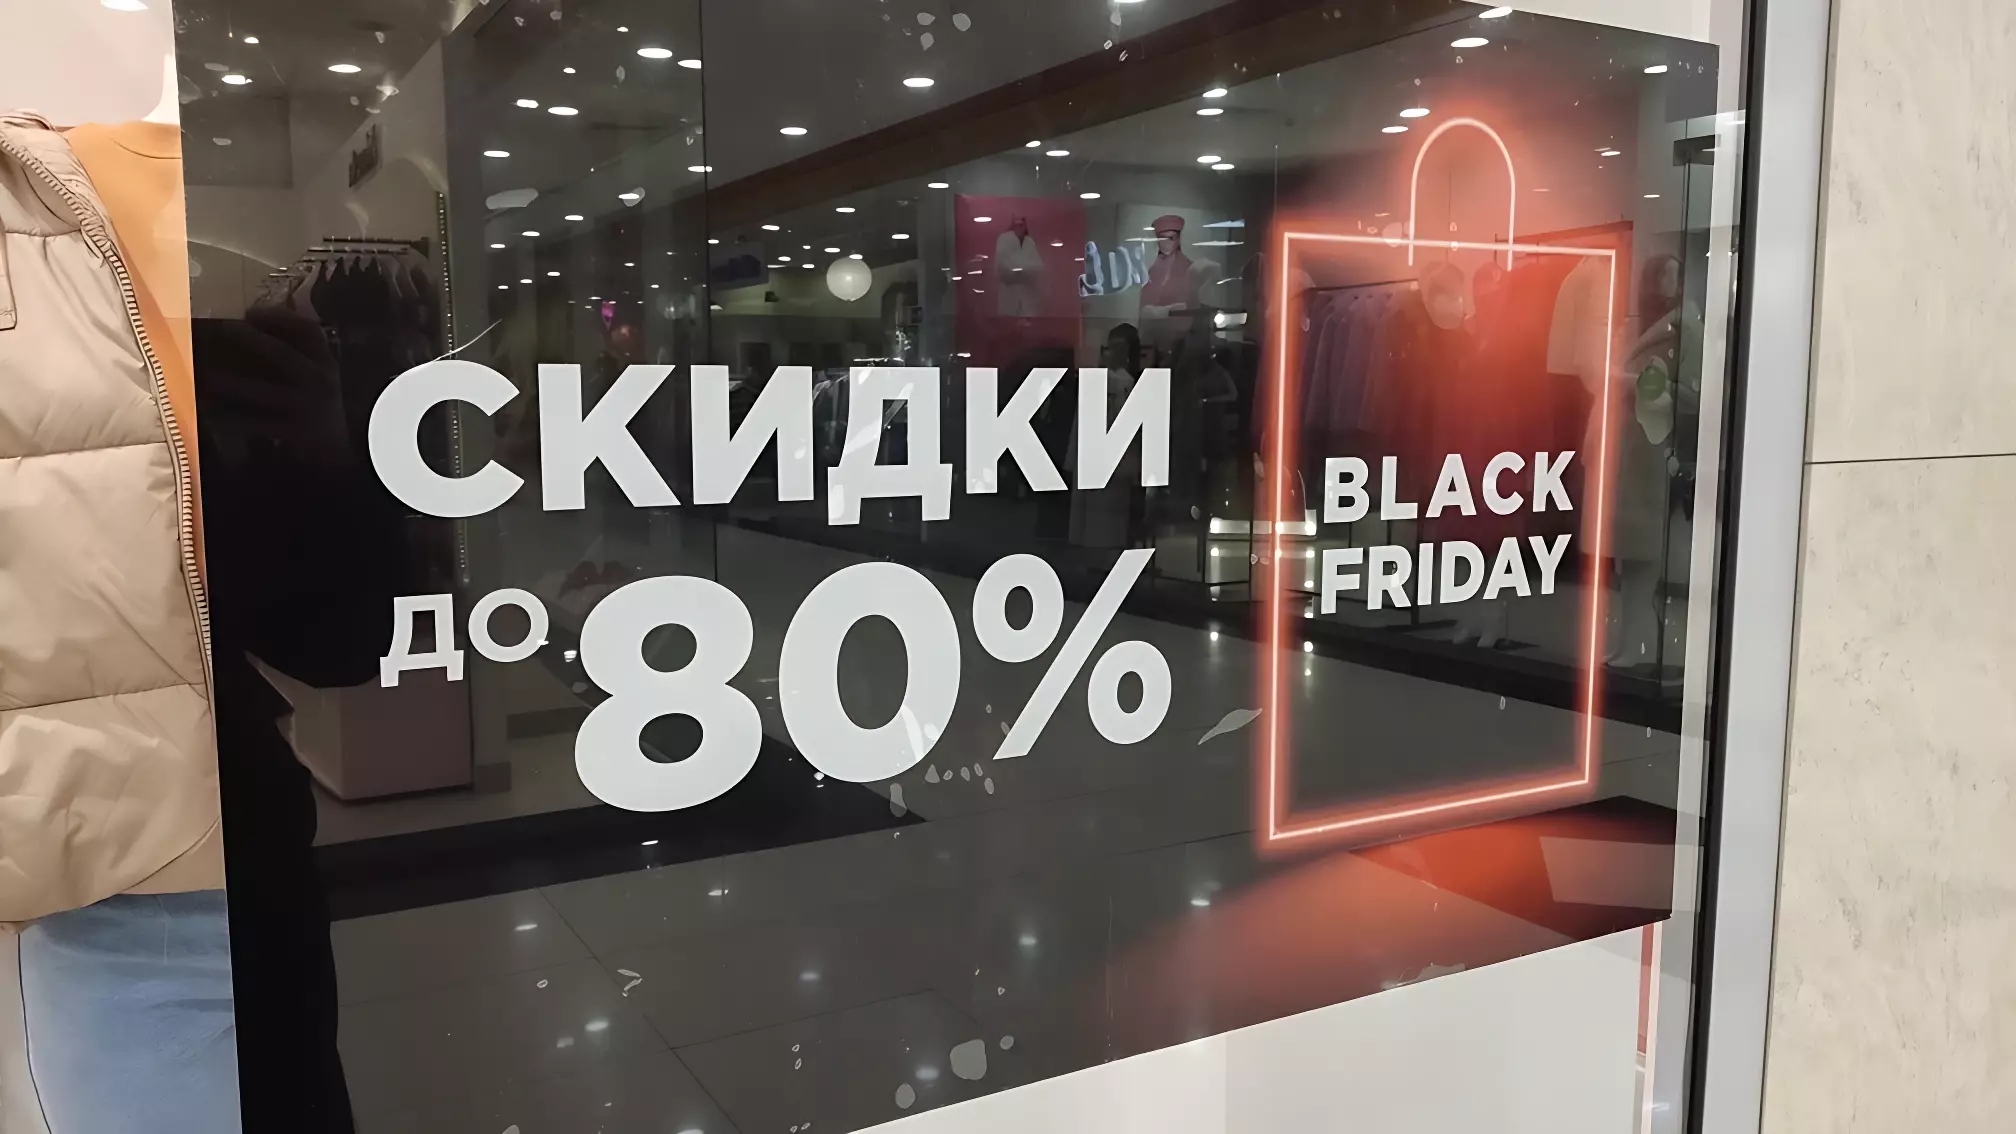 33% жителей Ижевска позитивно относятся к «Черной пятнице»